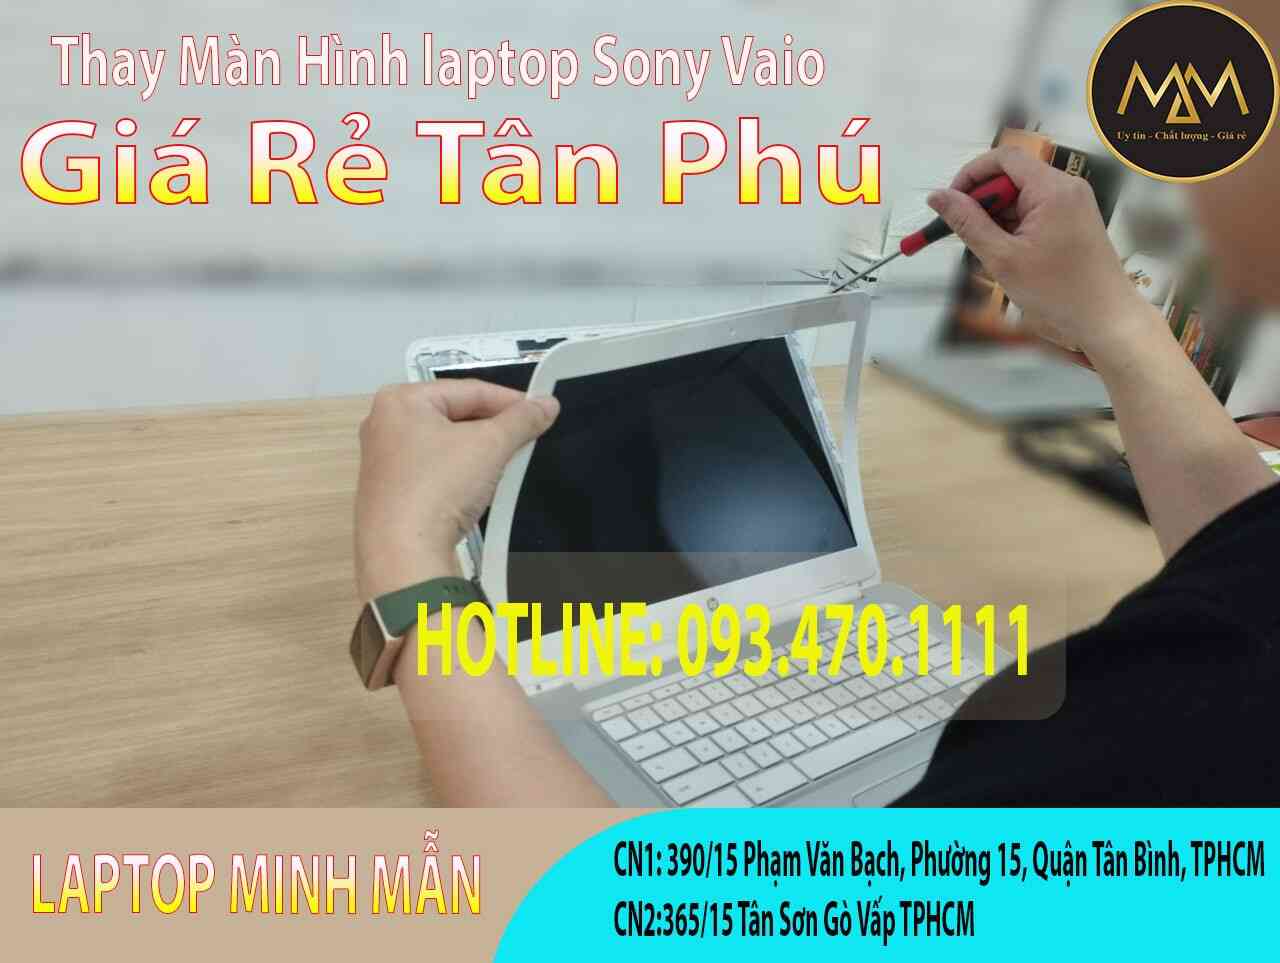 Thay-màn-hình-Sony-Vaio-giá-rẻ-Tân-Phú